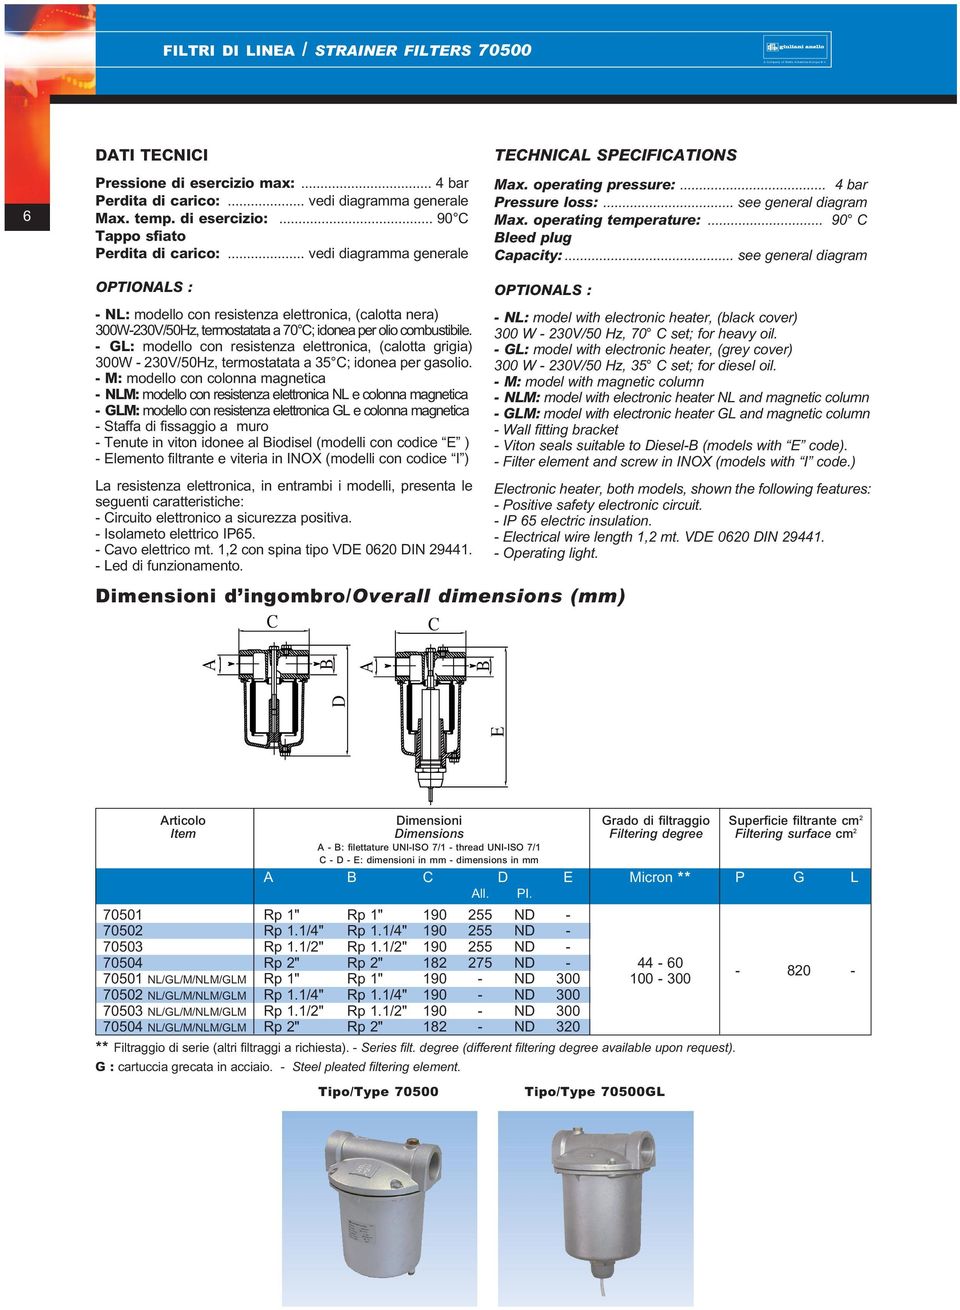 - GL: modello con resistenza elettronica, (calotta grigia) 300W - 230V/50Hz, termostatata a 35 C; idonea per gasolio.